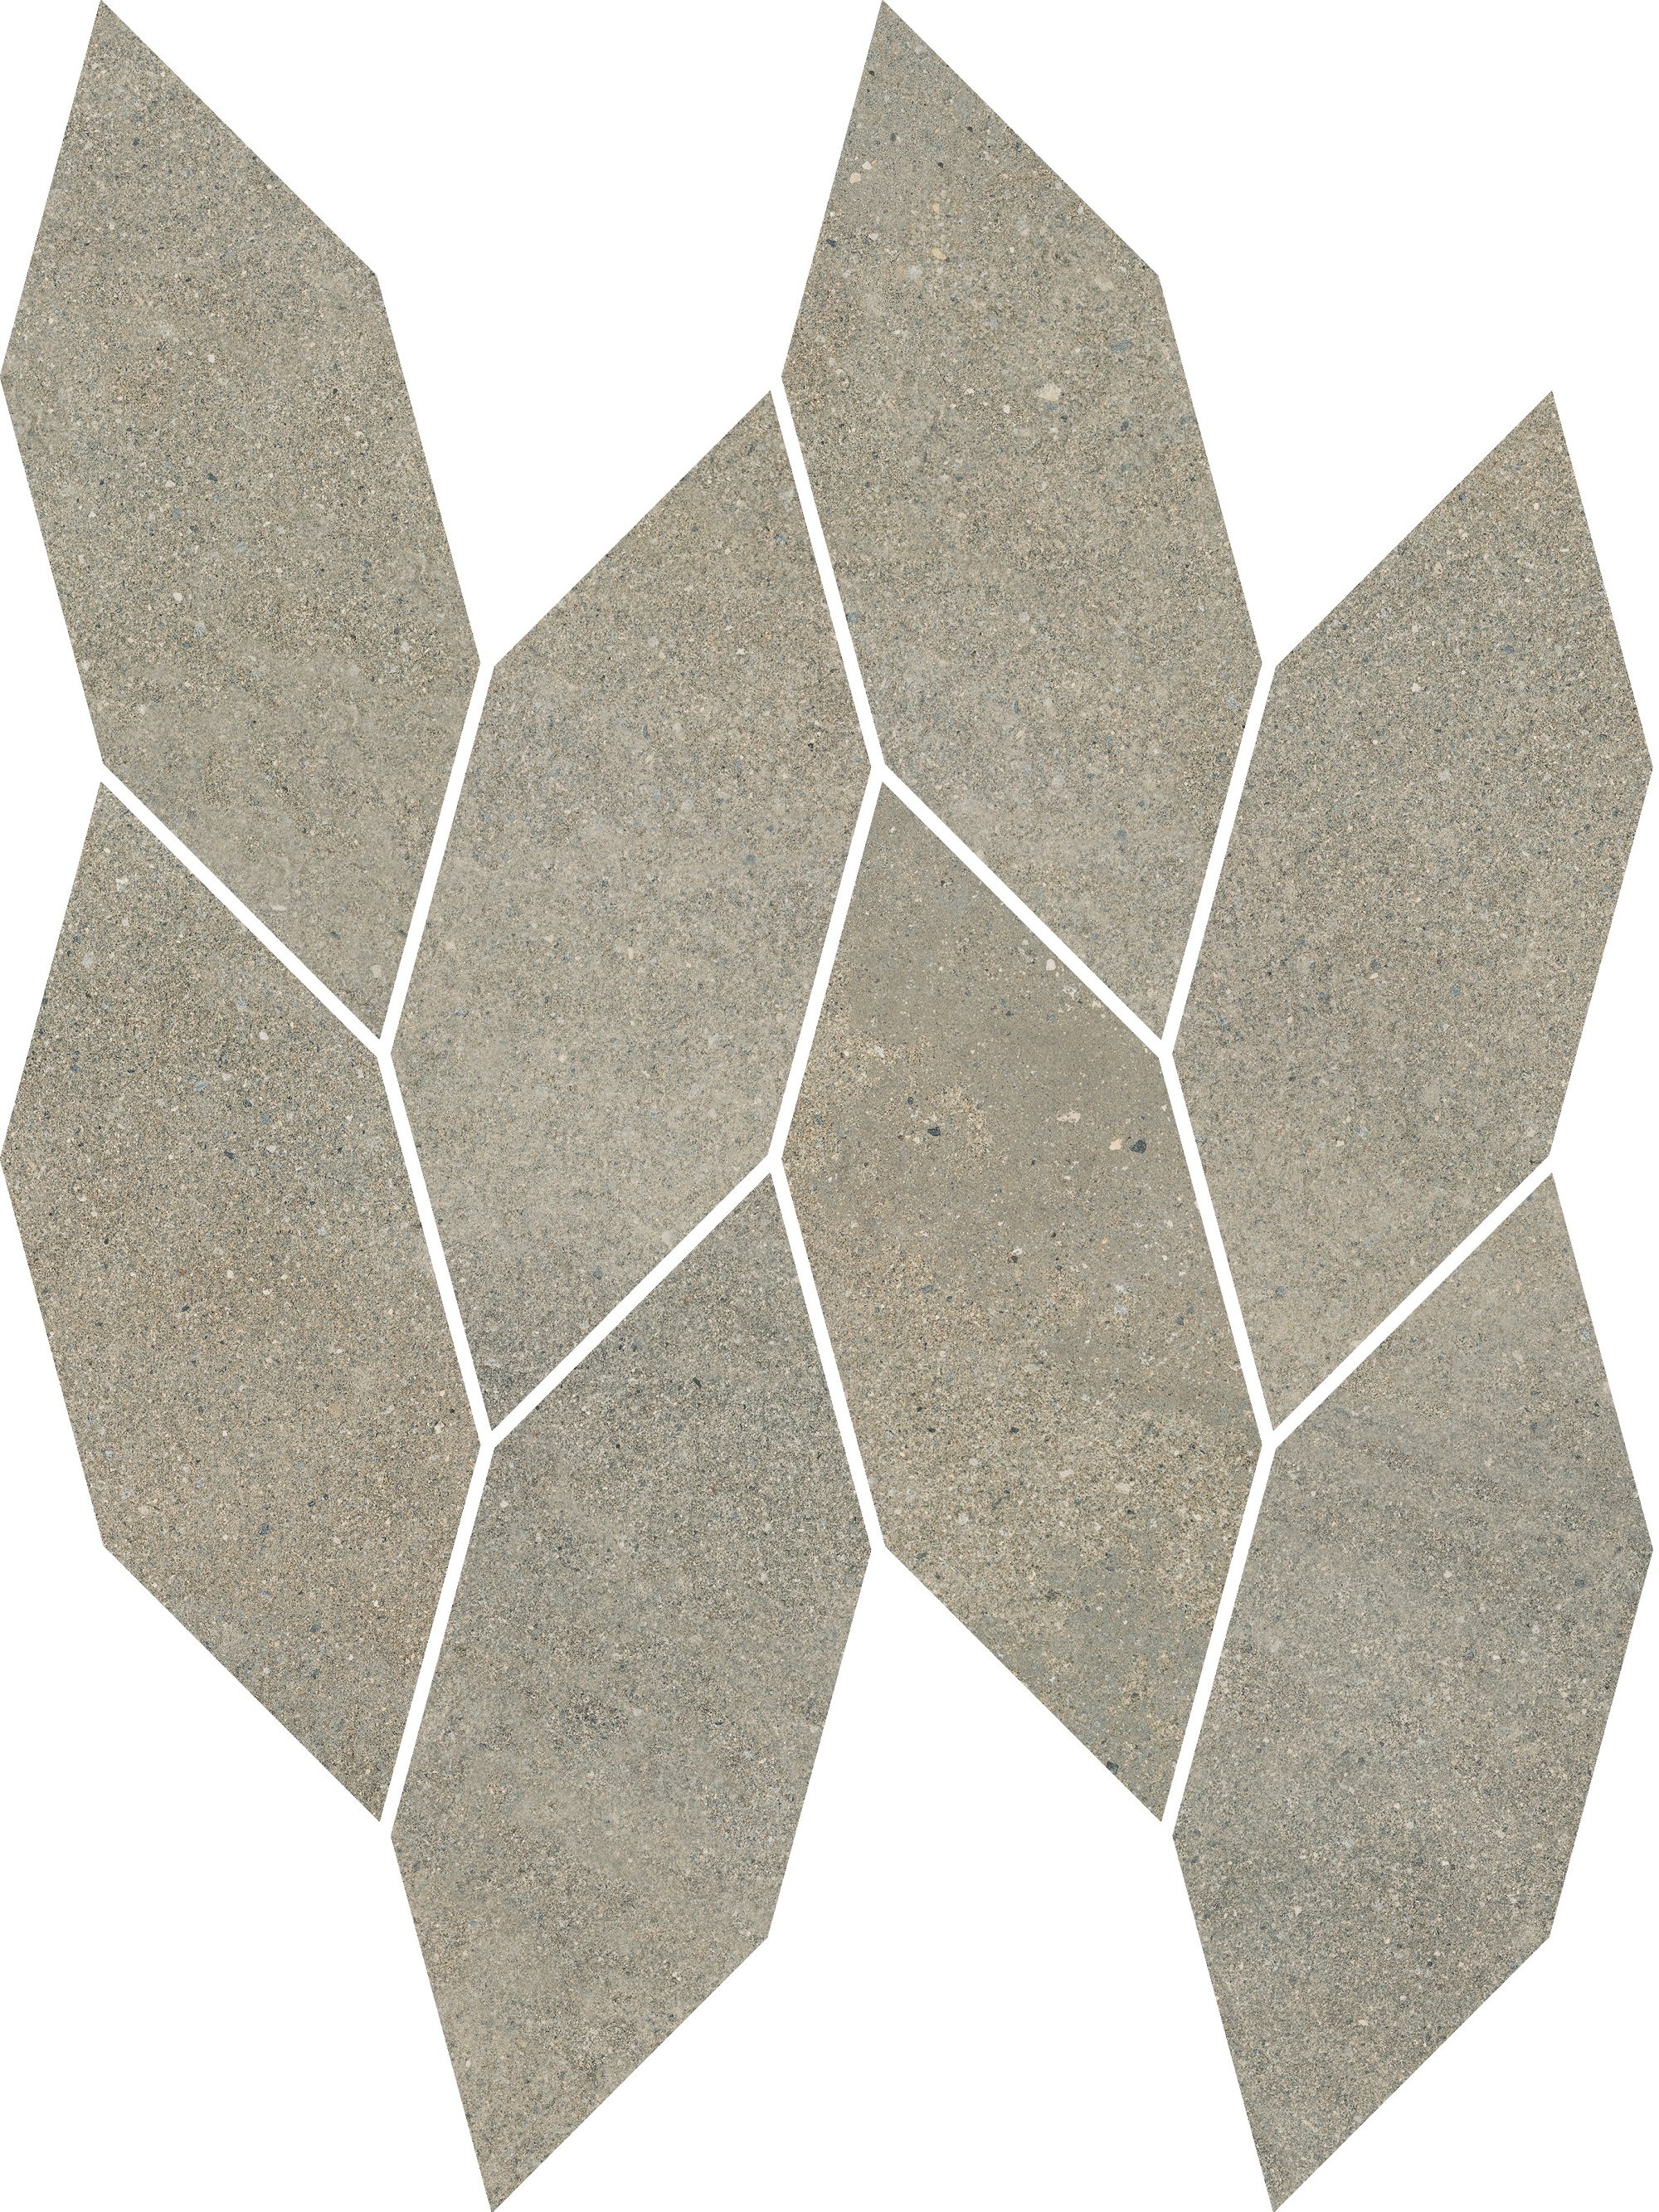 Smoothstone beige mozaika cięta satyna - obkládačka mozaika 22,3x29,8 béžová 159909